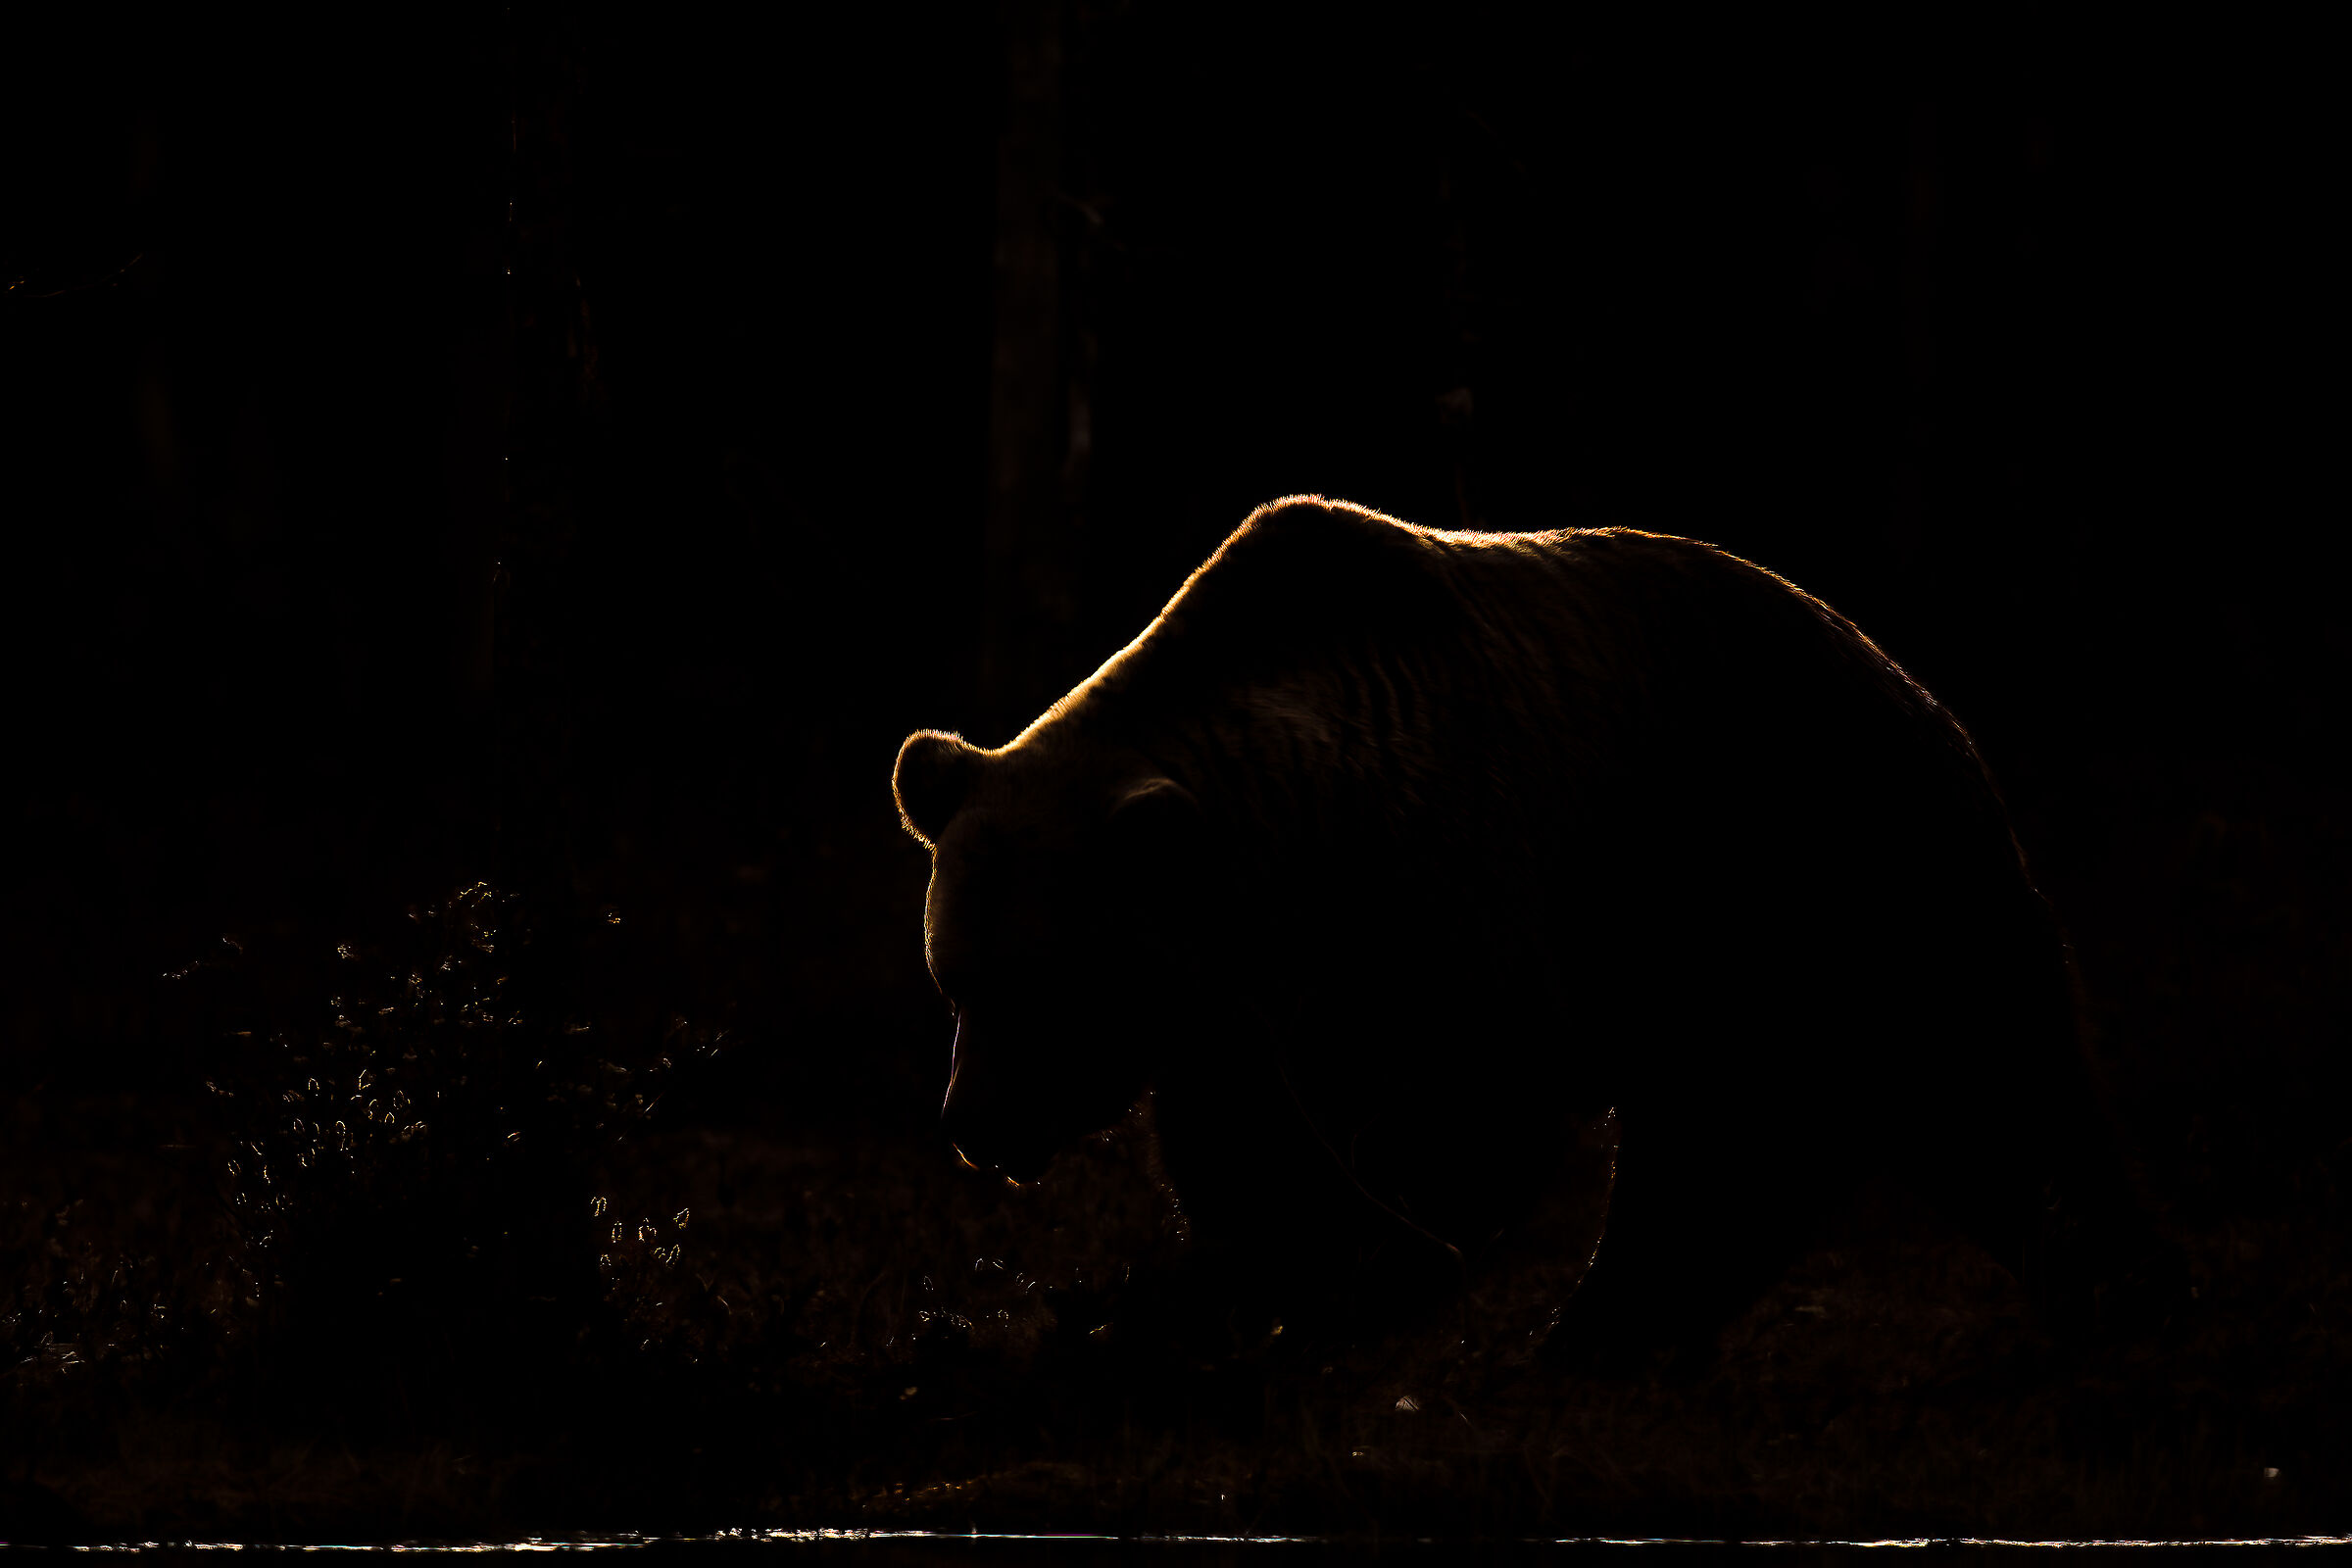 Brown bear.... a thread of light...